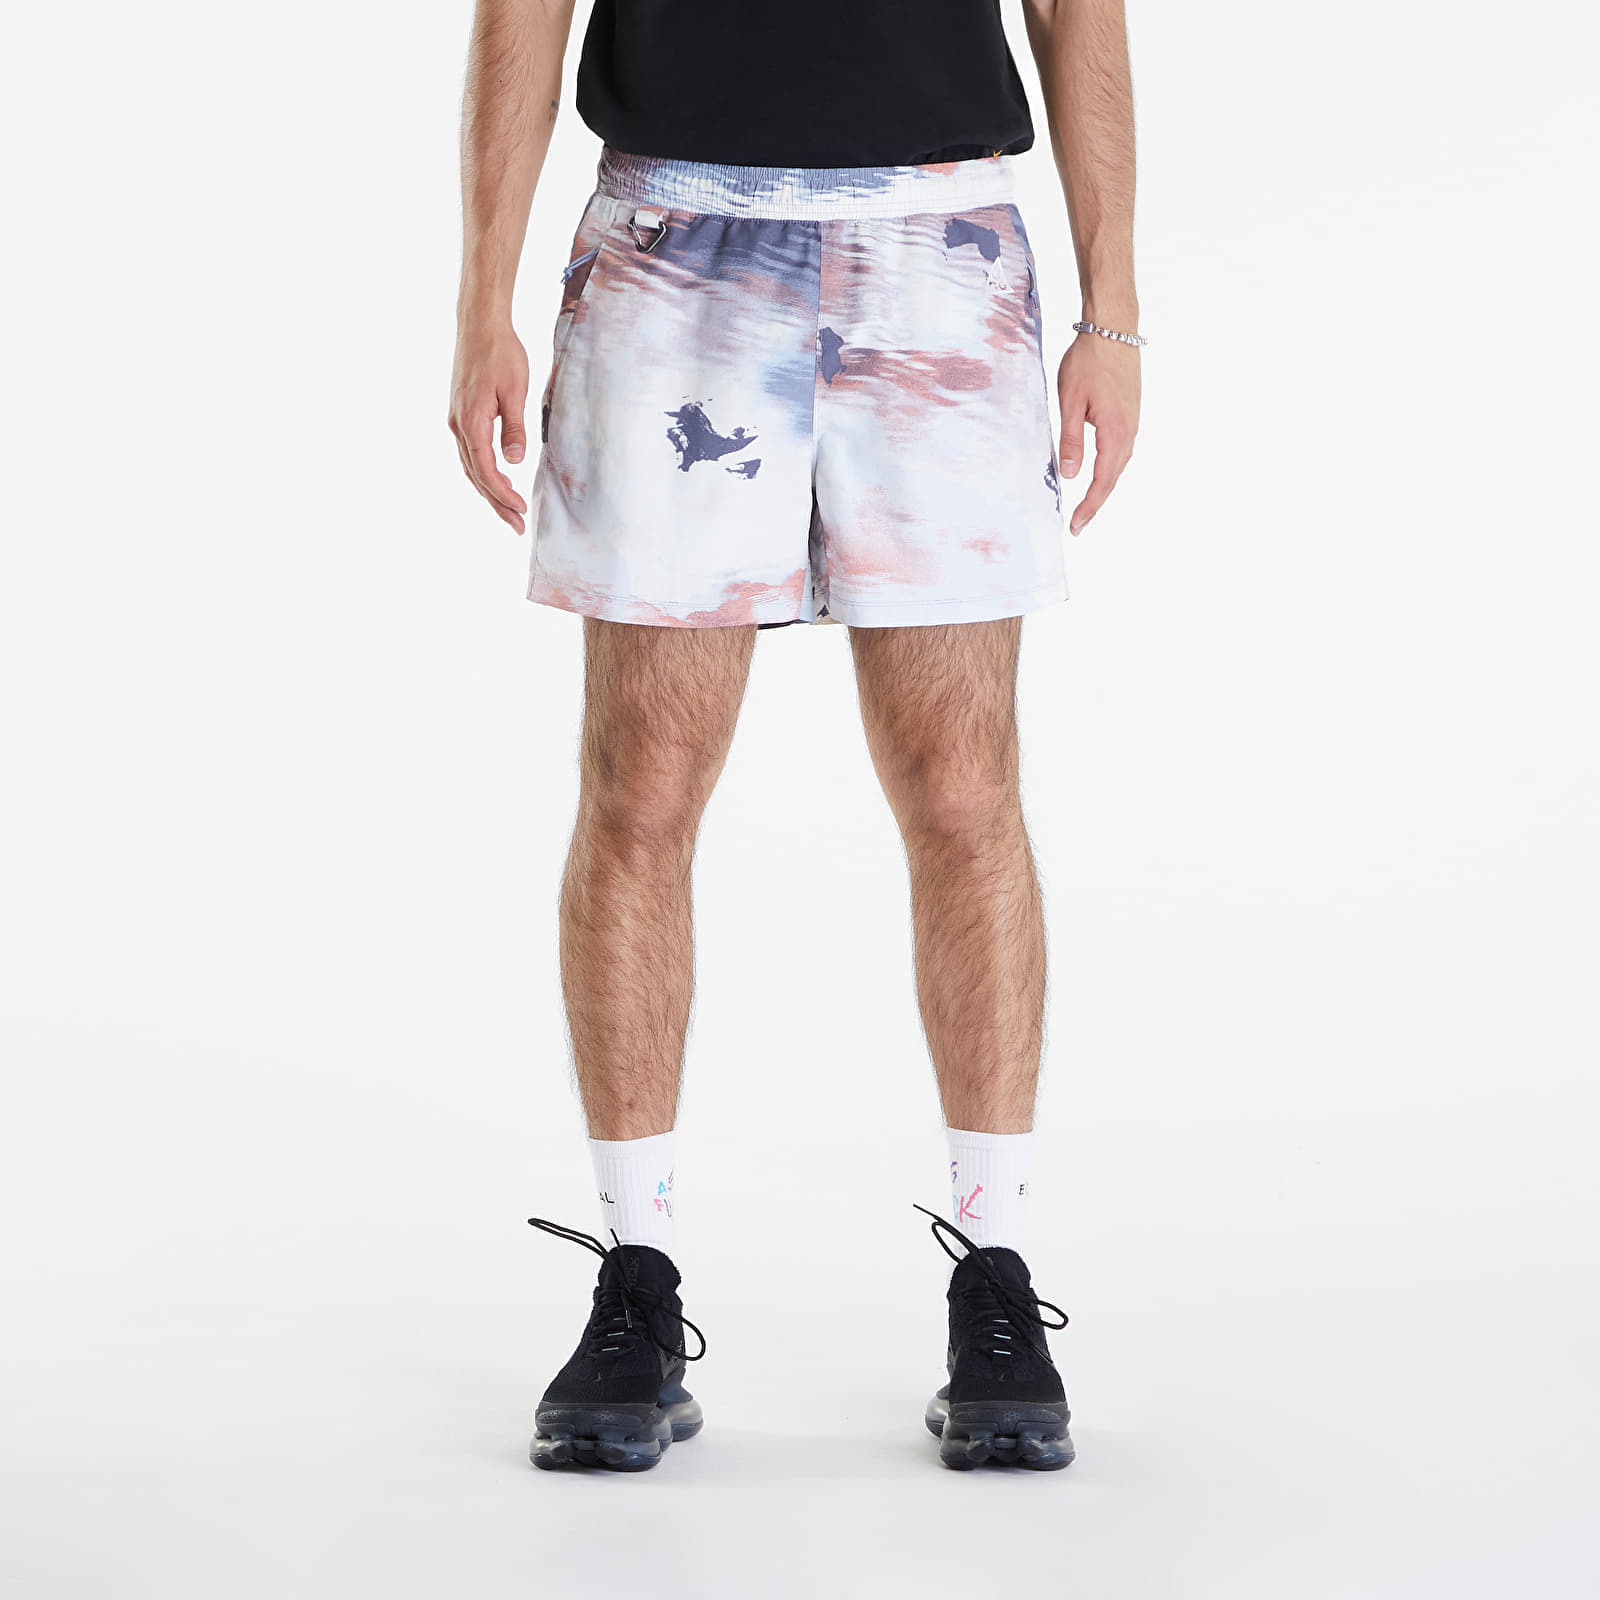 Nike ACG "Reservoir Goat" Men's Allover Print Shorts Ashen Slate/ Lt Armory Blue/ Summit White